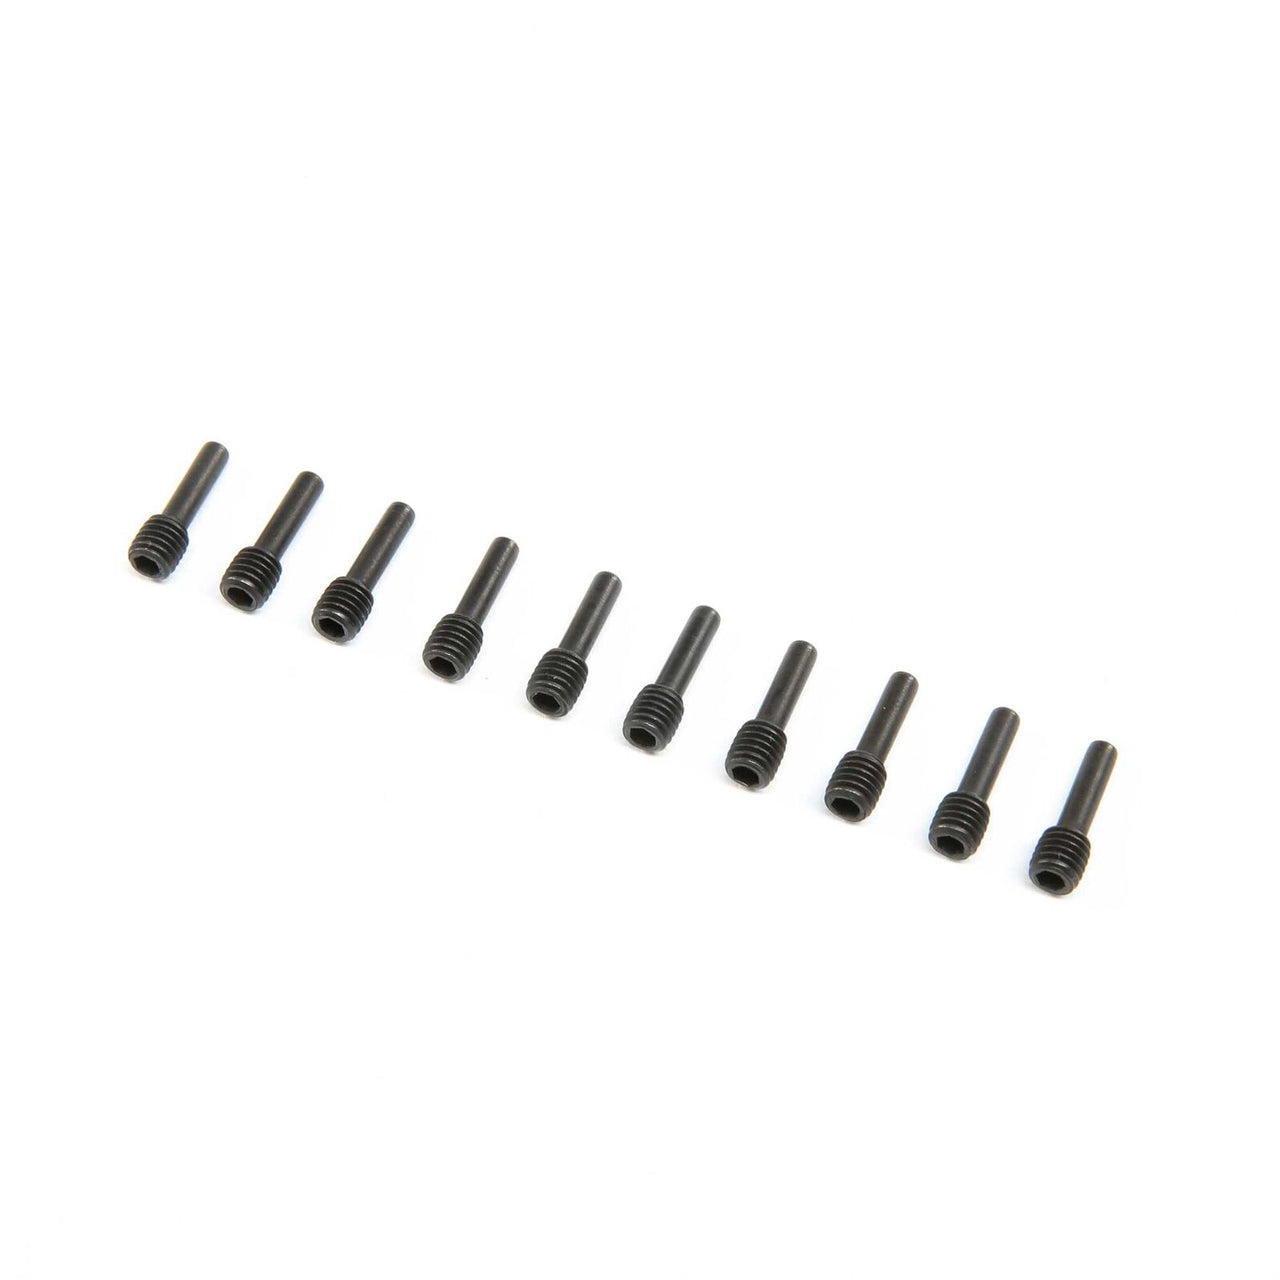 LOS252131 Driveshaft Screw Pin, M5x16mm, Steel (10): SBR/SRR